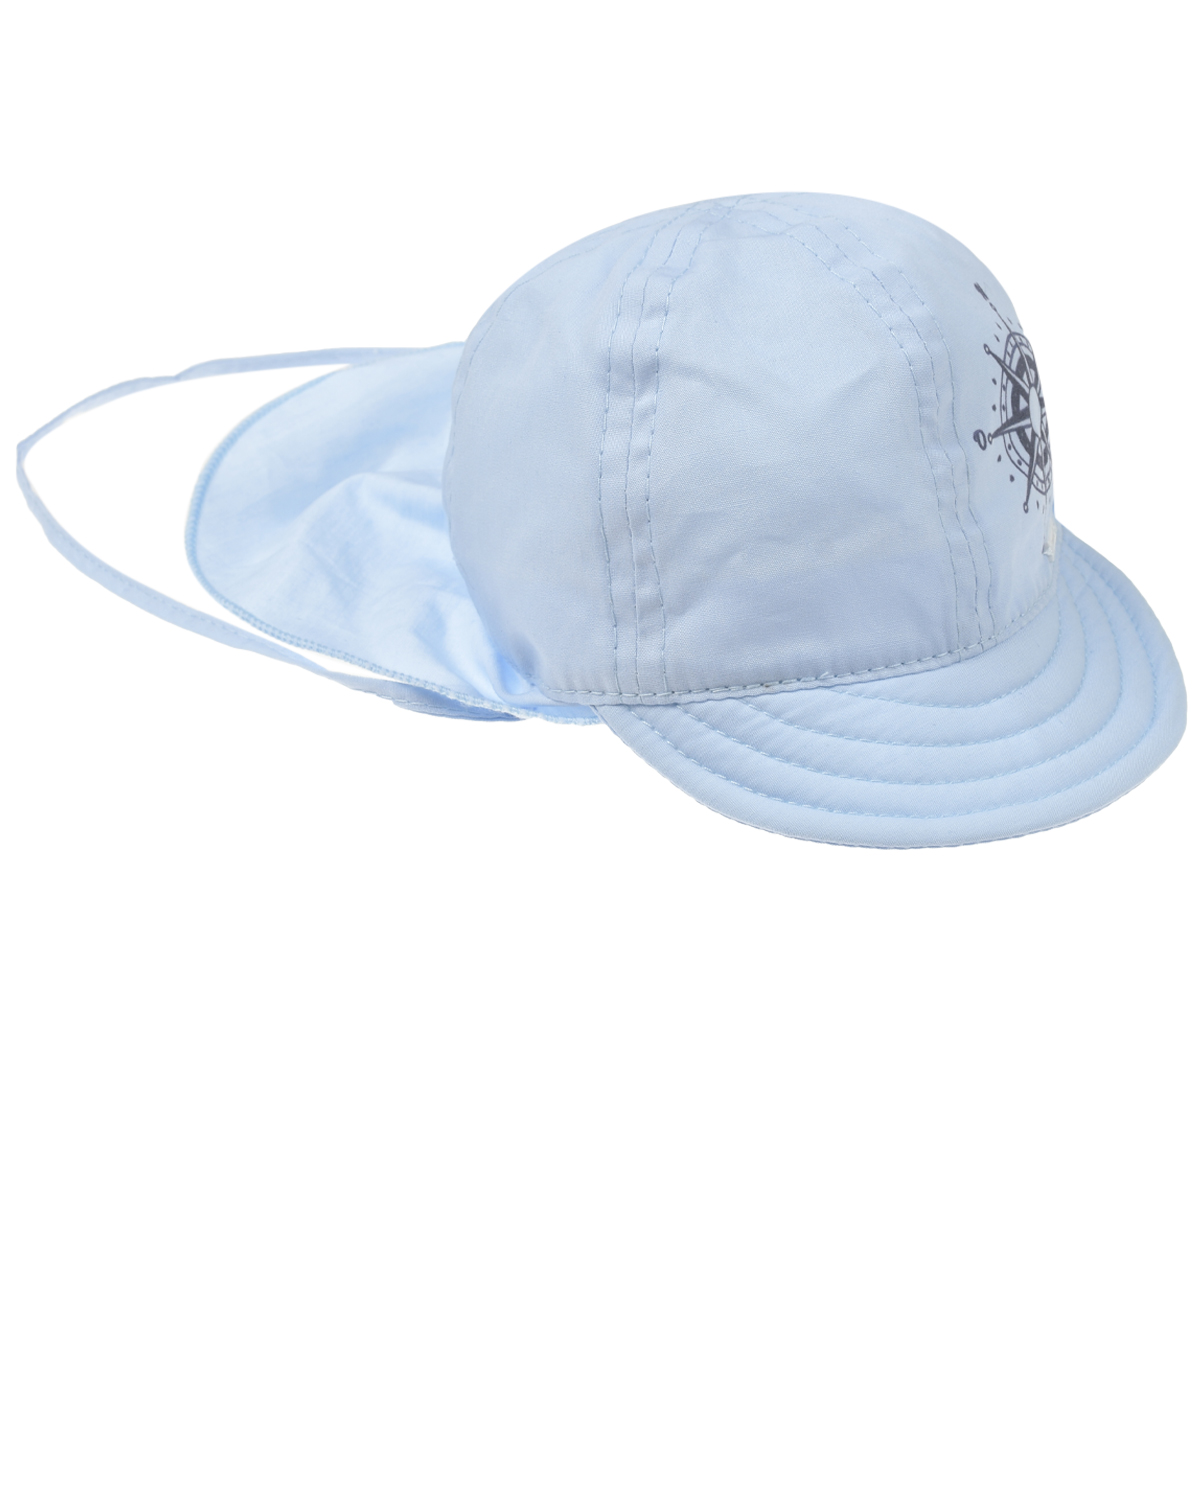 Голубая кепка с принтом "штурвал" Il Trenino, размер 44, цвет голубой